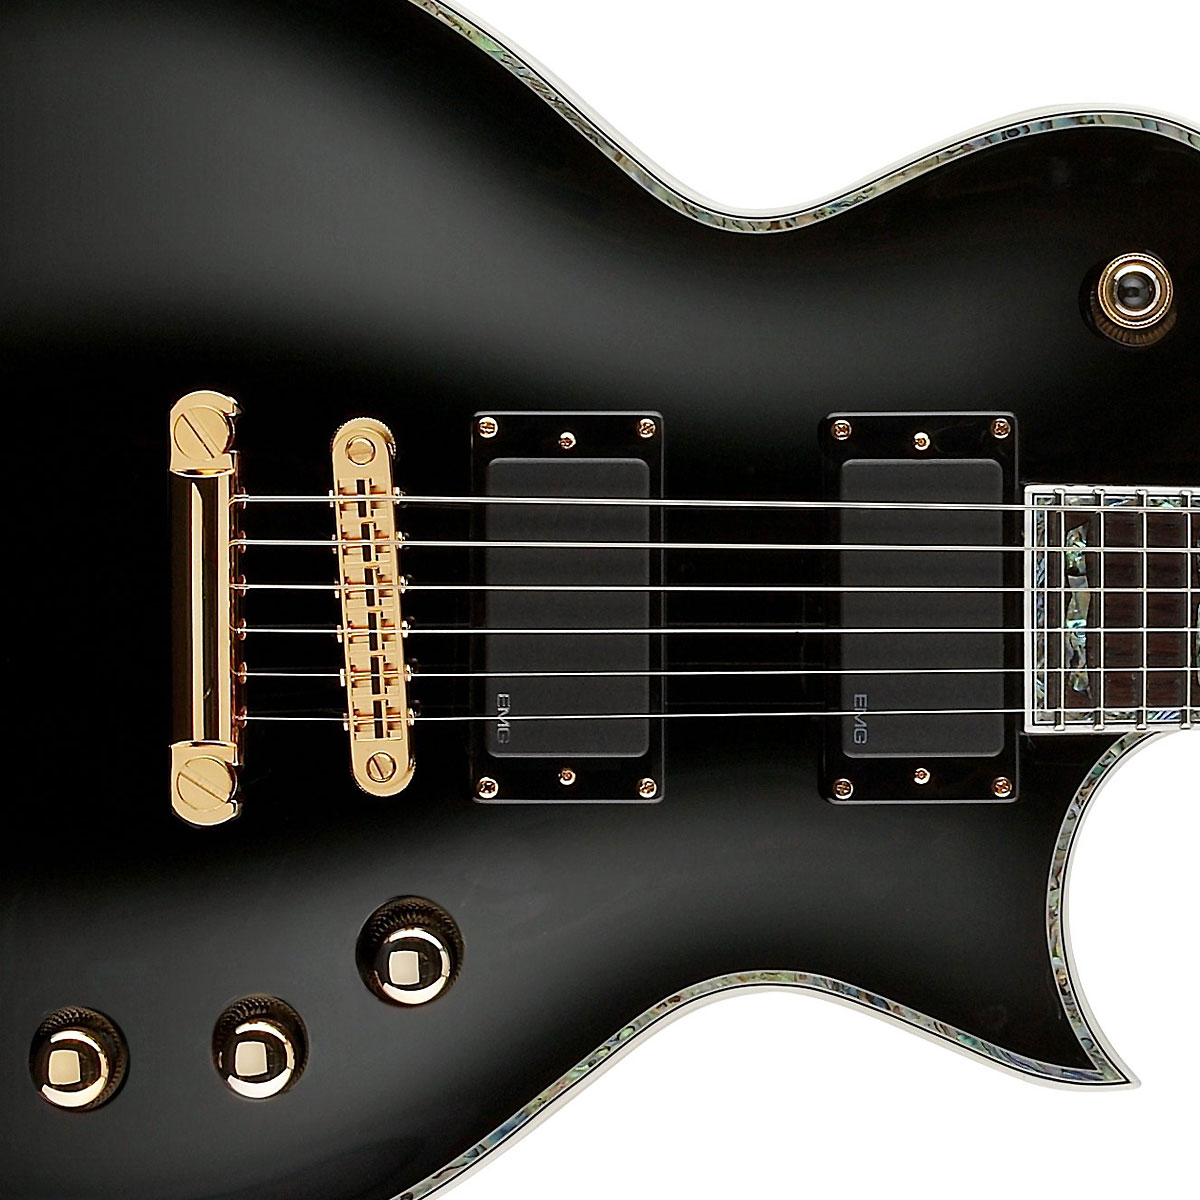 Ltd Ec-1000 Emg Blk - Black - Metal electric guitar - Variation 1